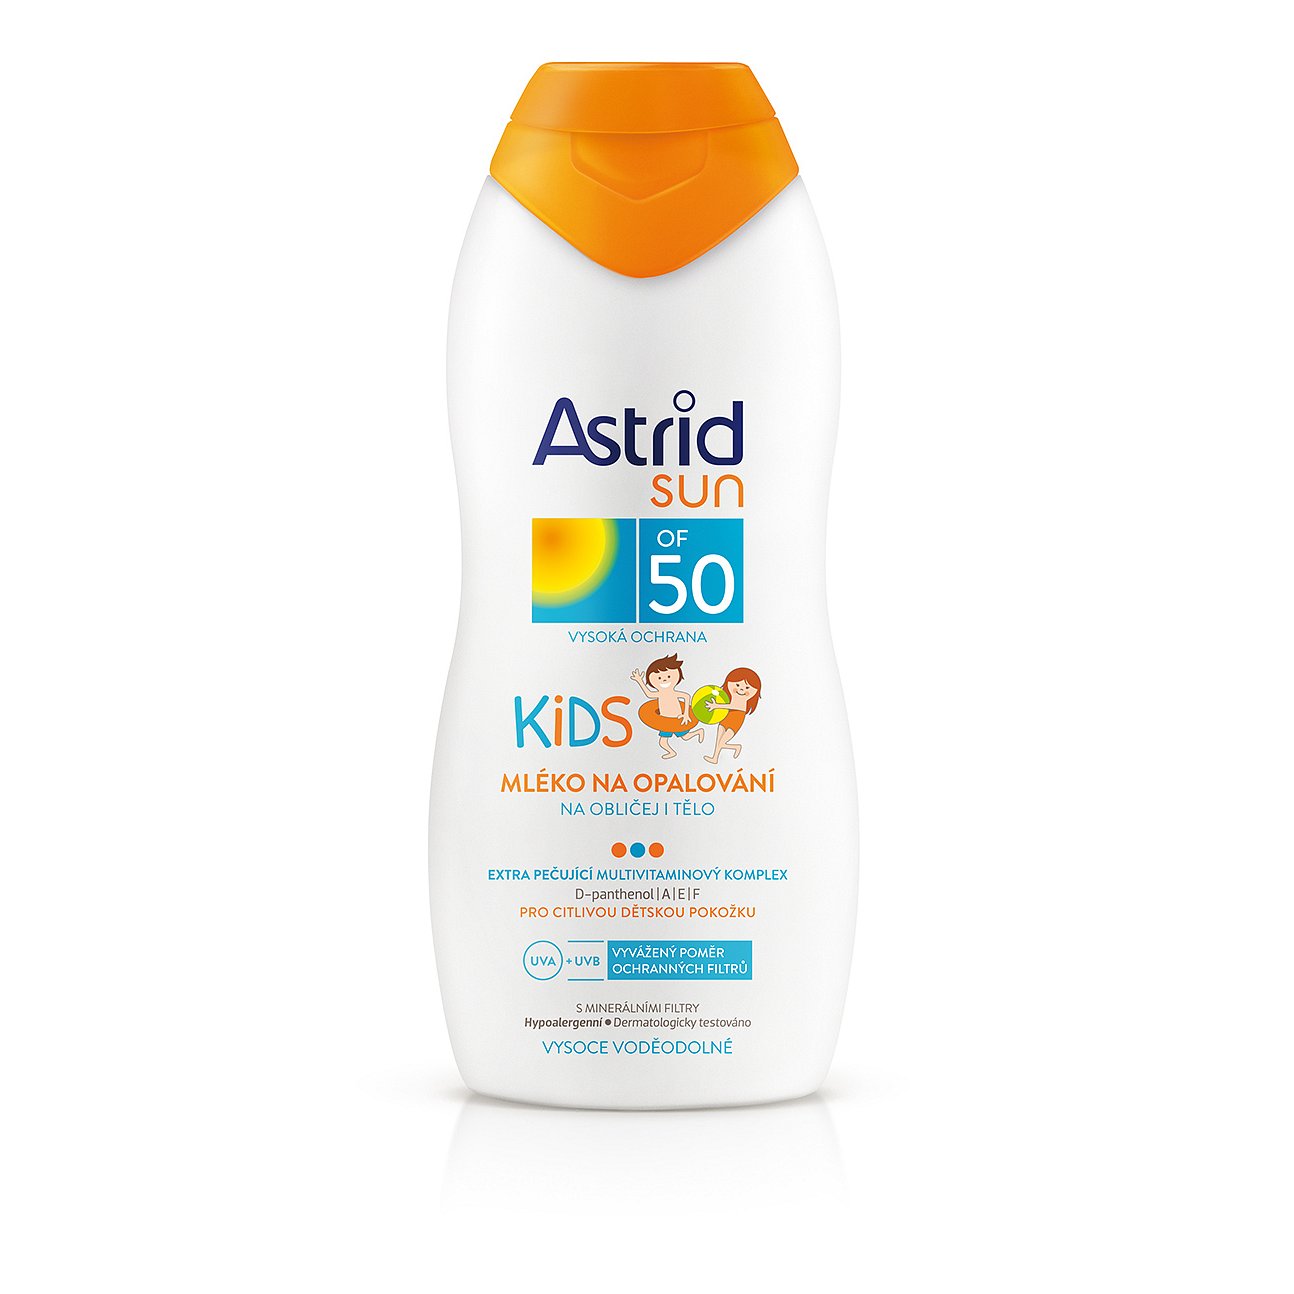 Astrid Sun Kids mléko na opalování OF 50 200 ml